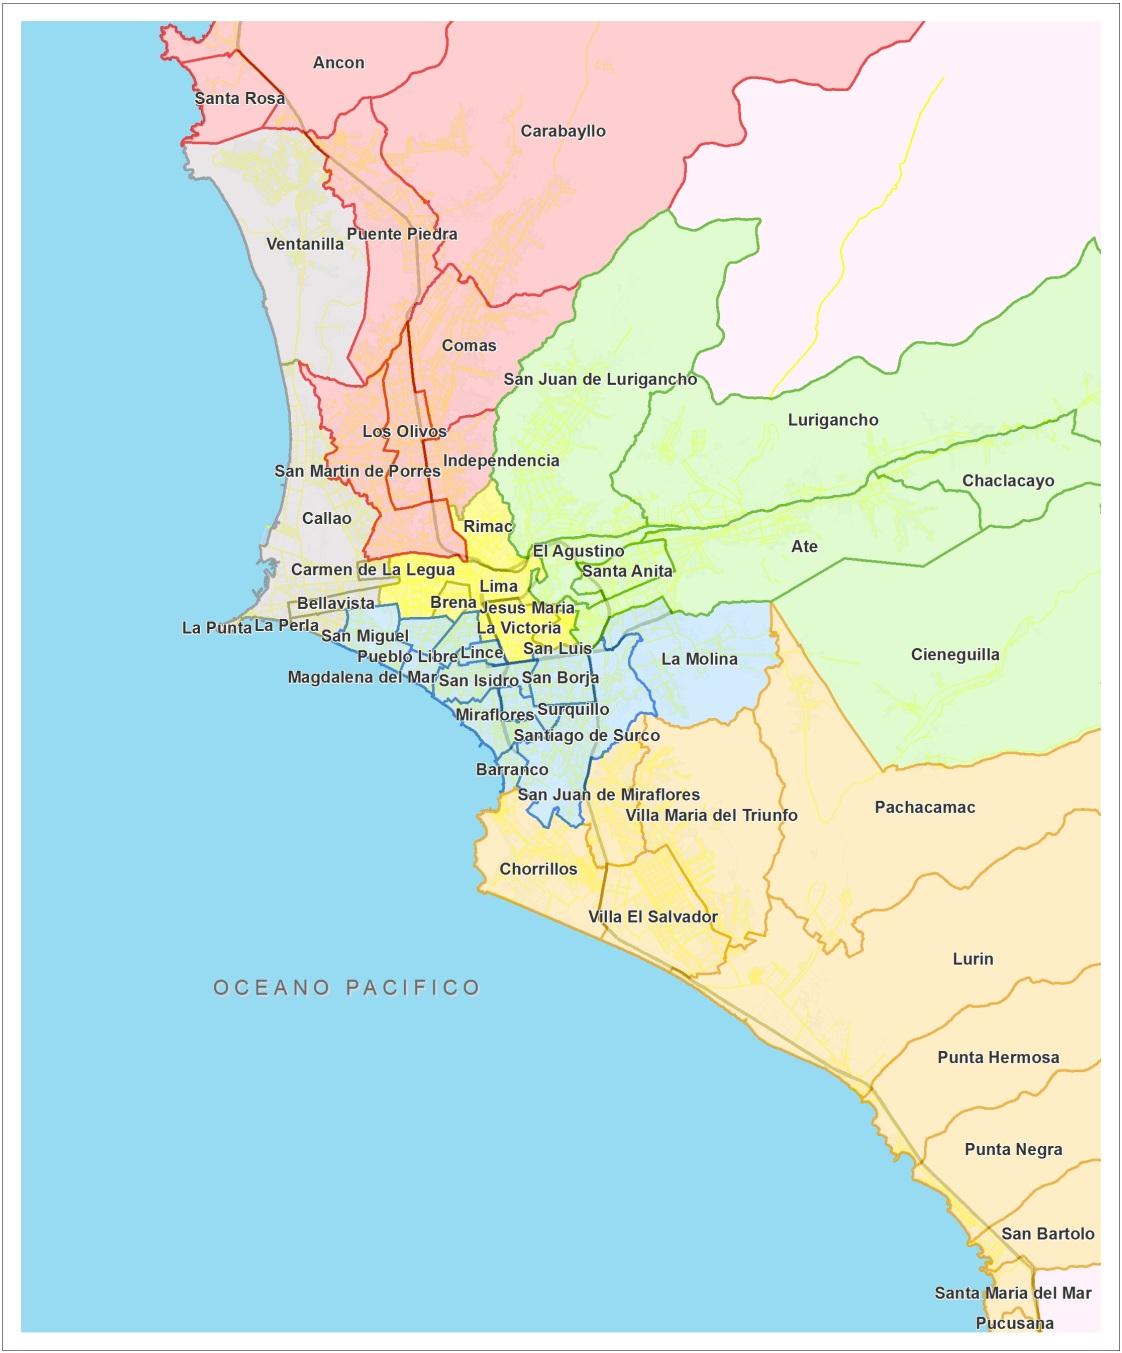 Demanda - Distribución de la Población por Zona Lima Norte y Lima Este son las zonas que albergan la mayor cantidad de población, con